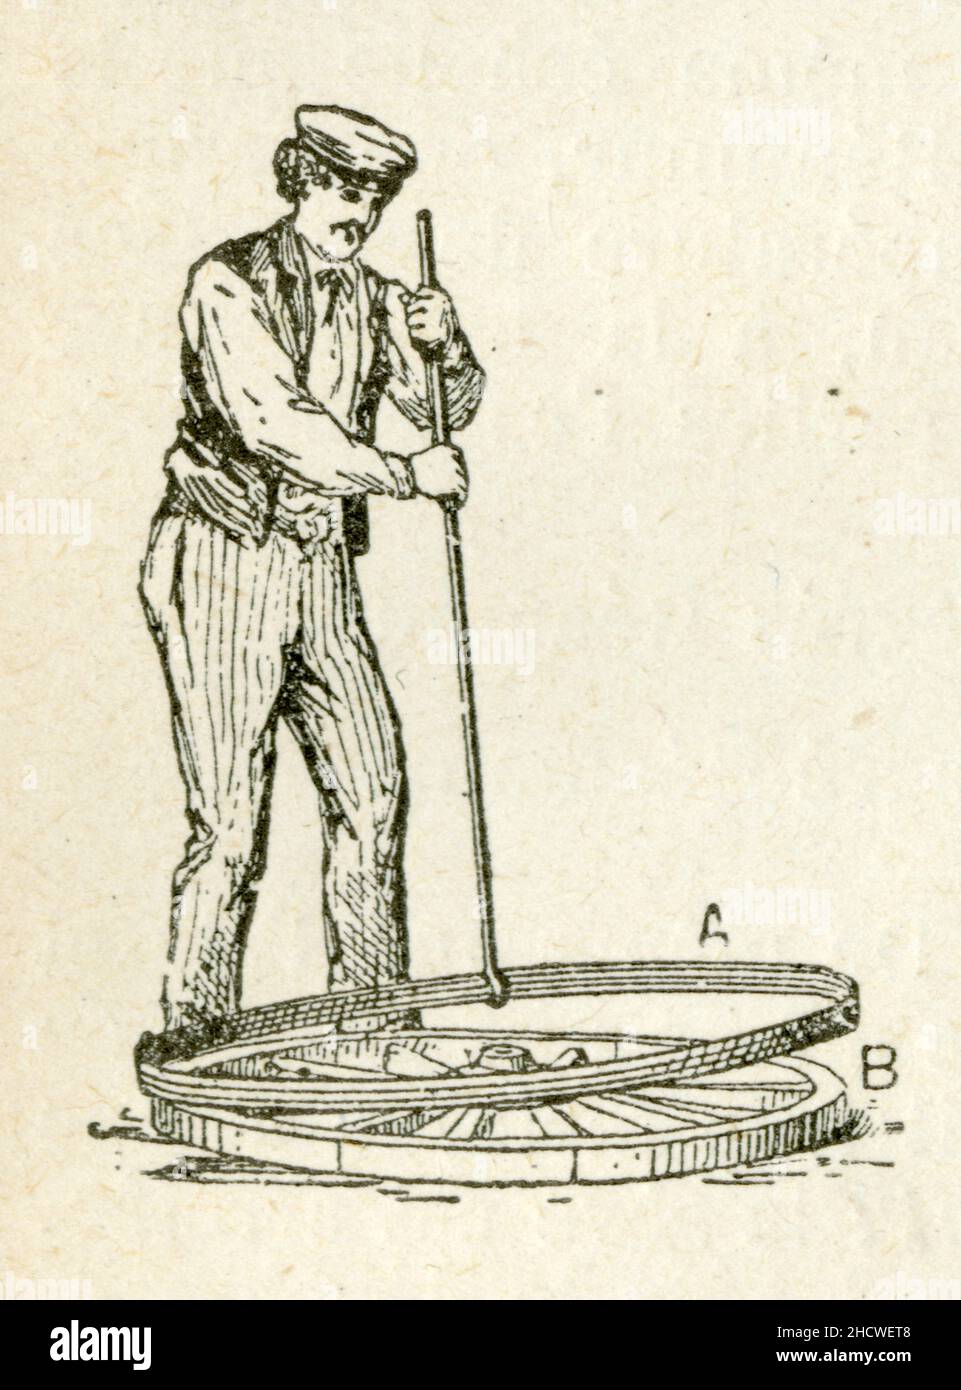 Charron posant un bendage de roue Foto Stock